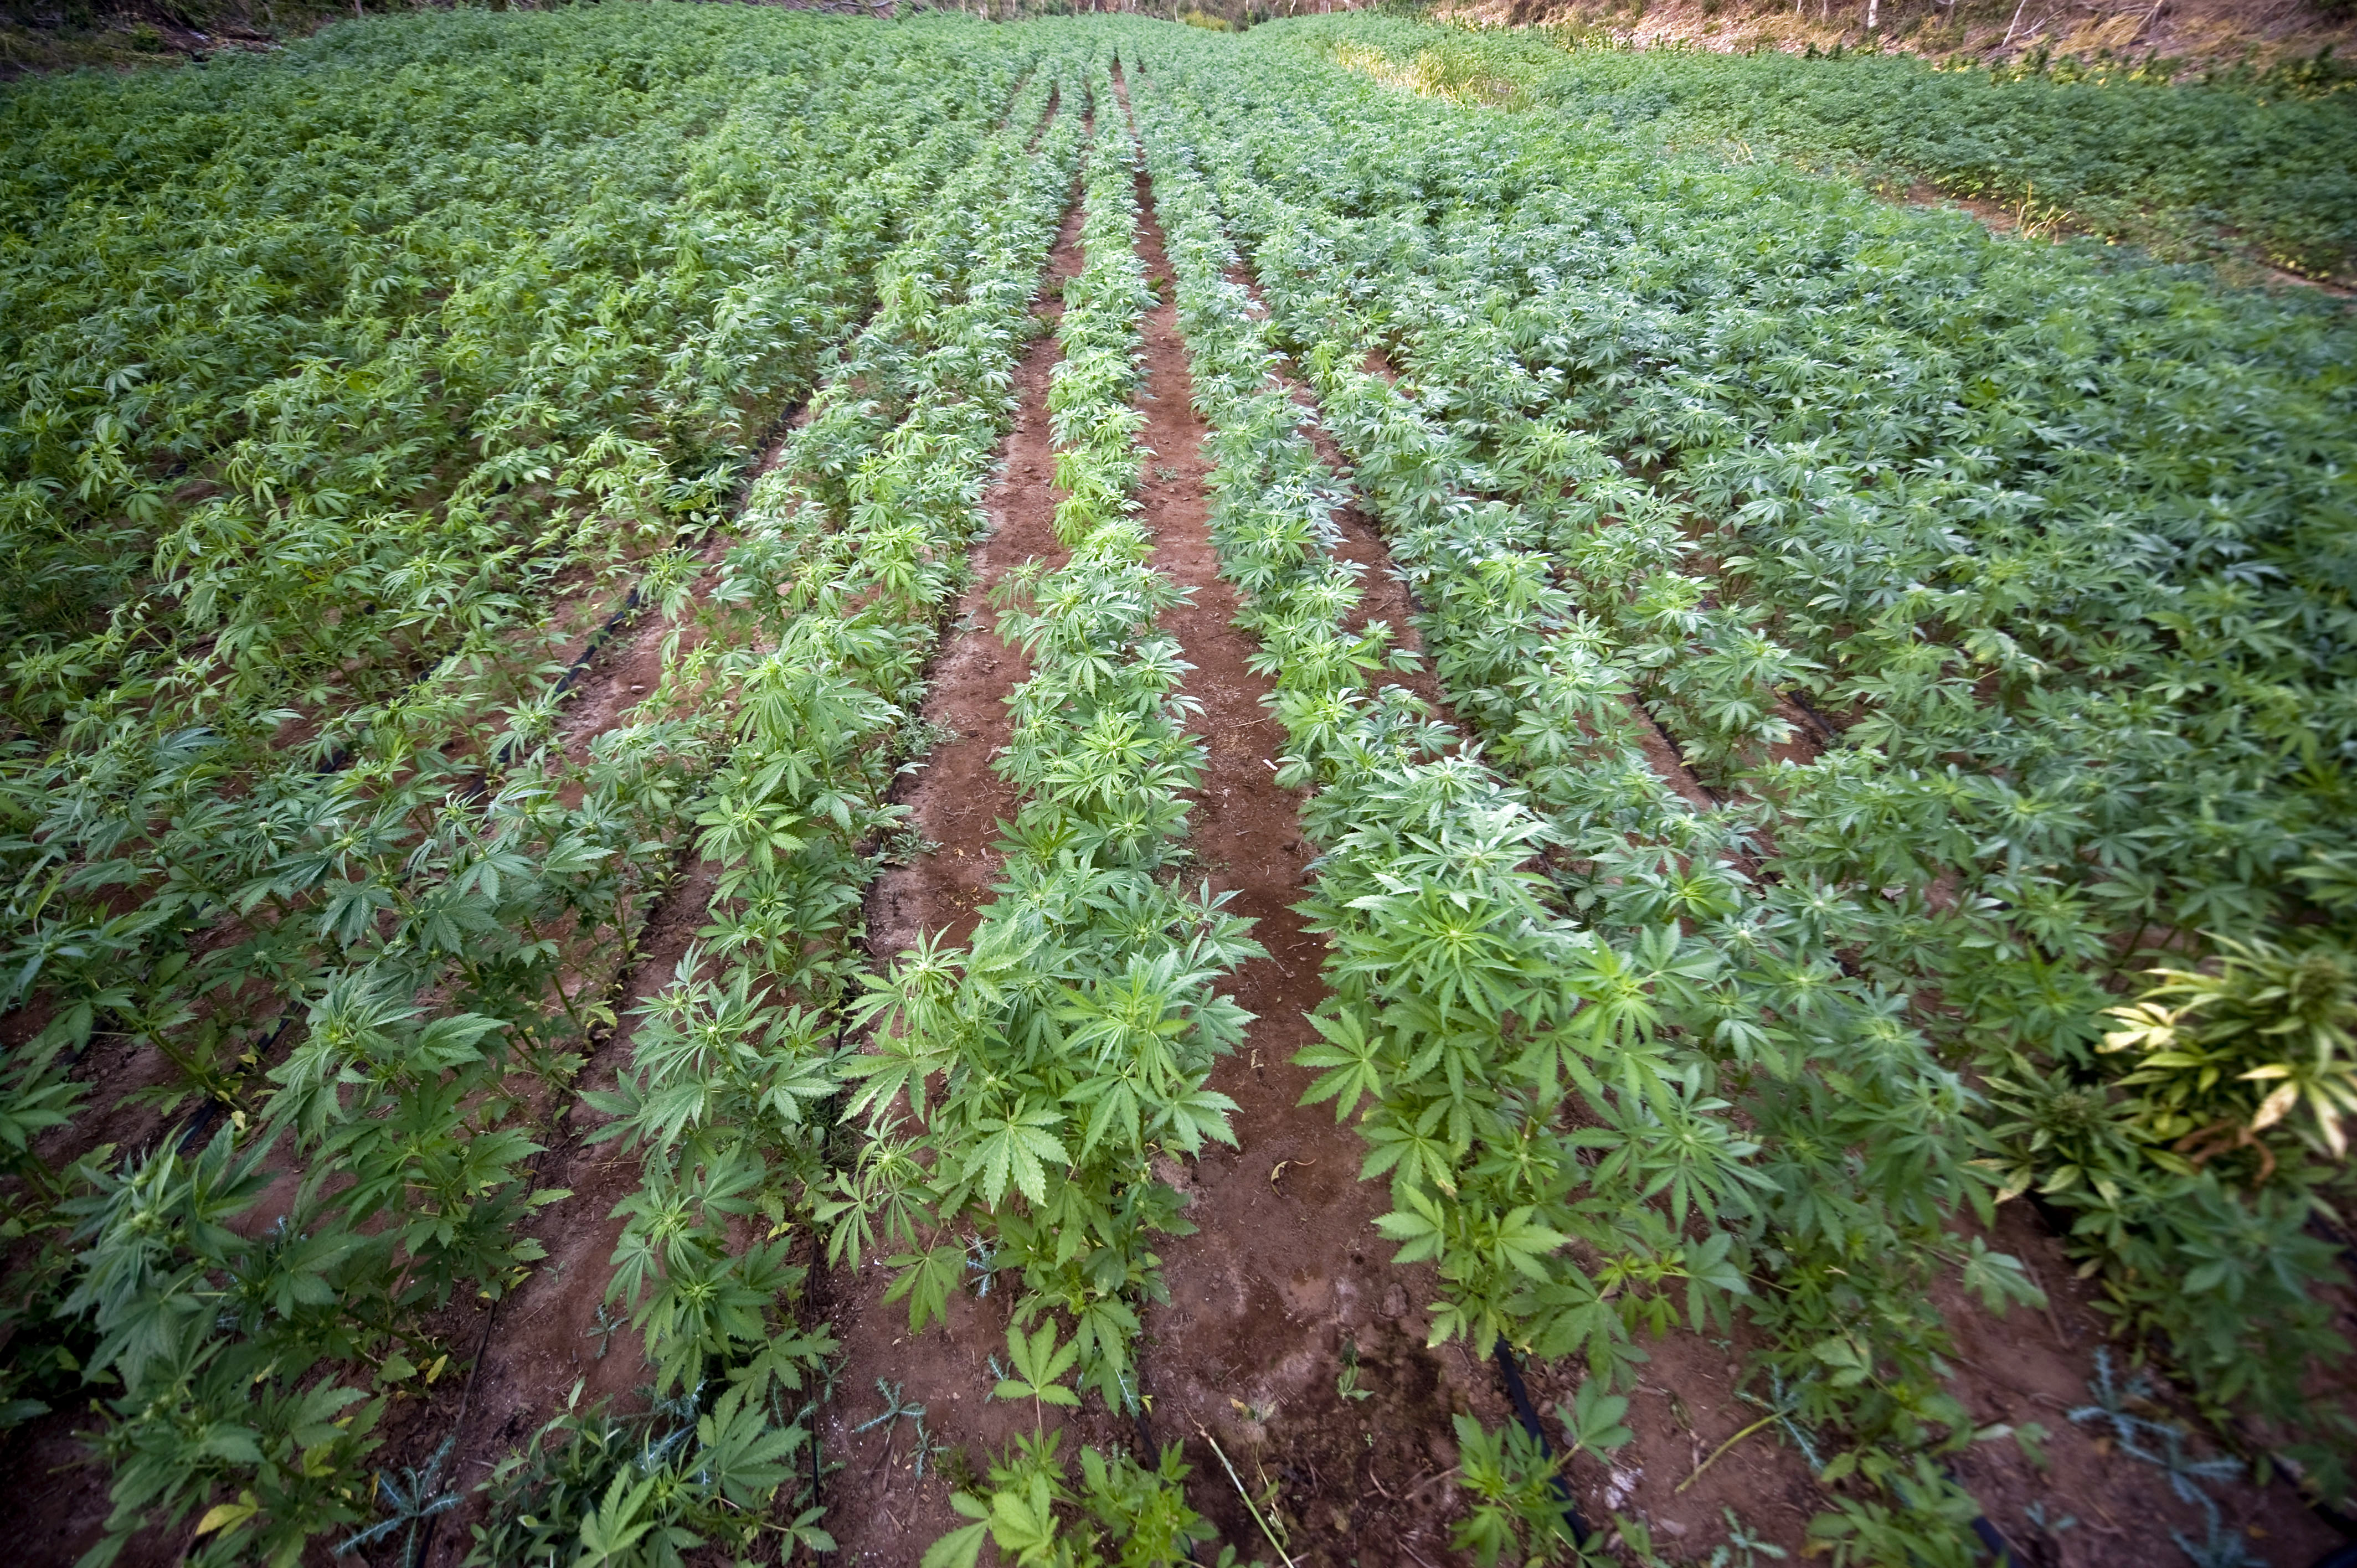 выращивание марихуаны в поле